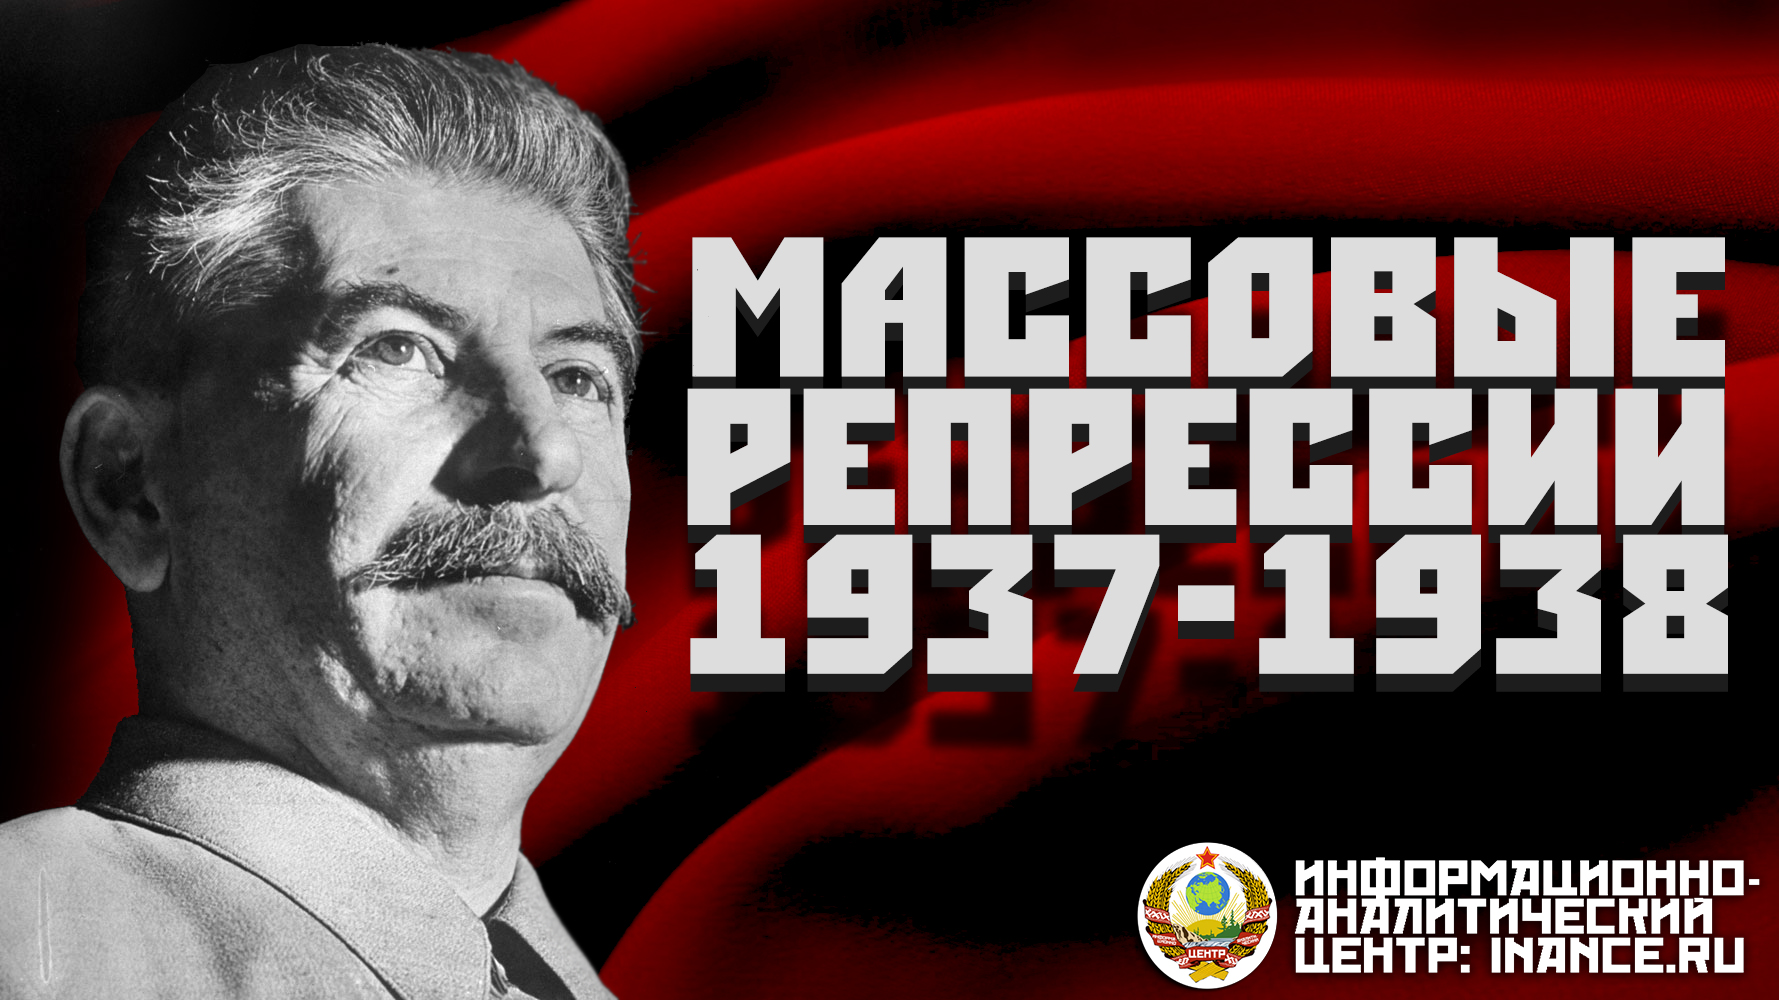 Сталин 1937 год. Репрессии 1937-1938. Сталинский террор 1937 года. Сталин в 1937 репрессии. Массовые политические репрессии 1937 1938 гг.